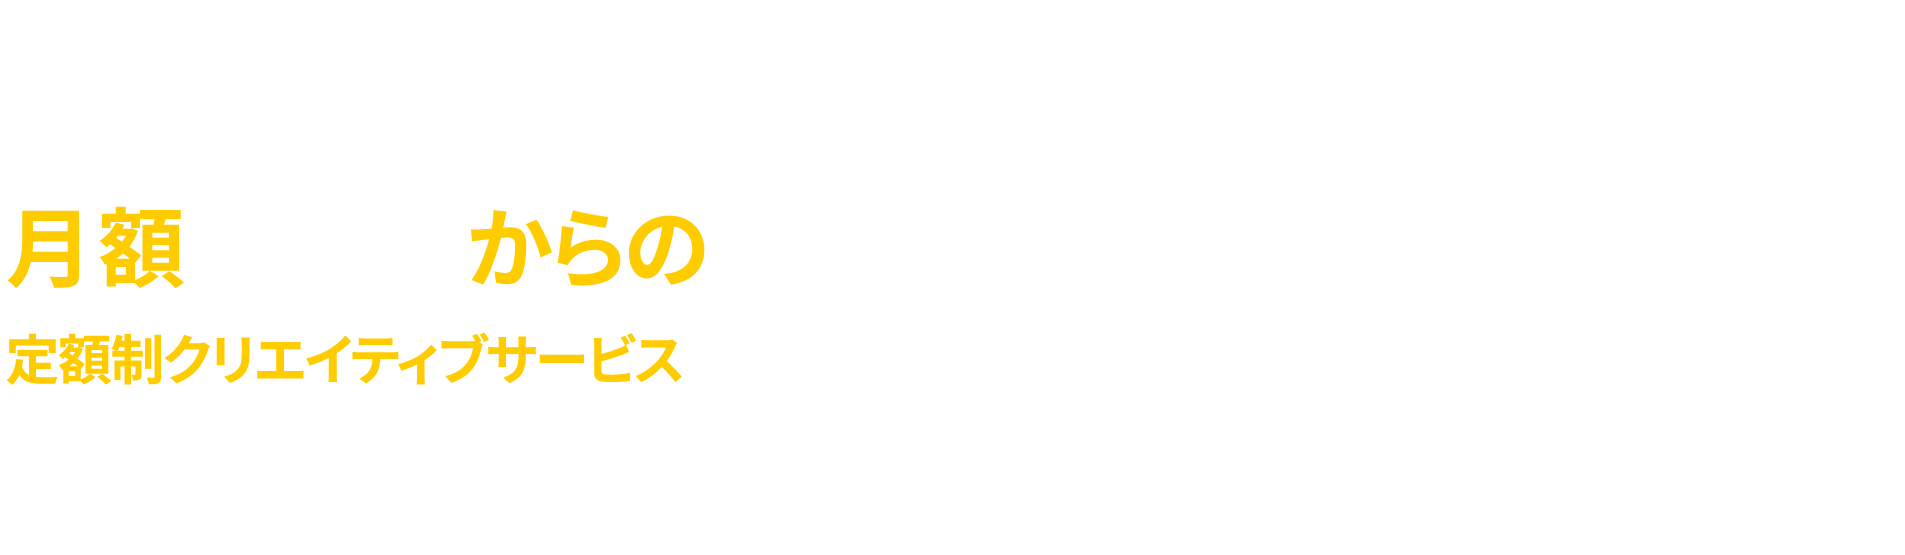 月額5万円からの定額制クリエイティブサービス DesignPassport デザインパスポート